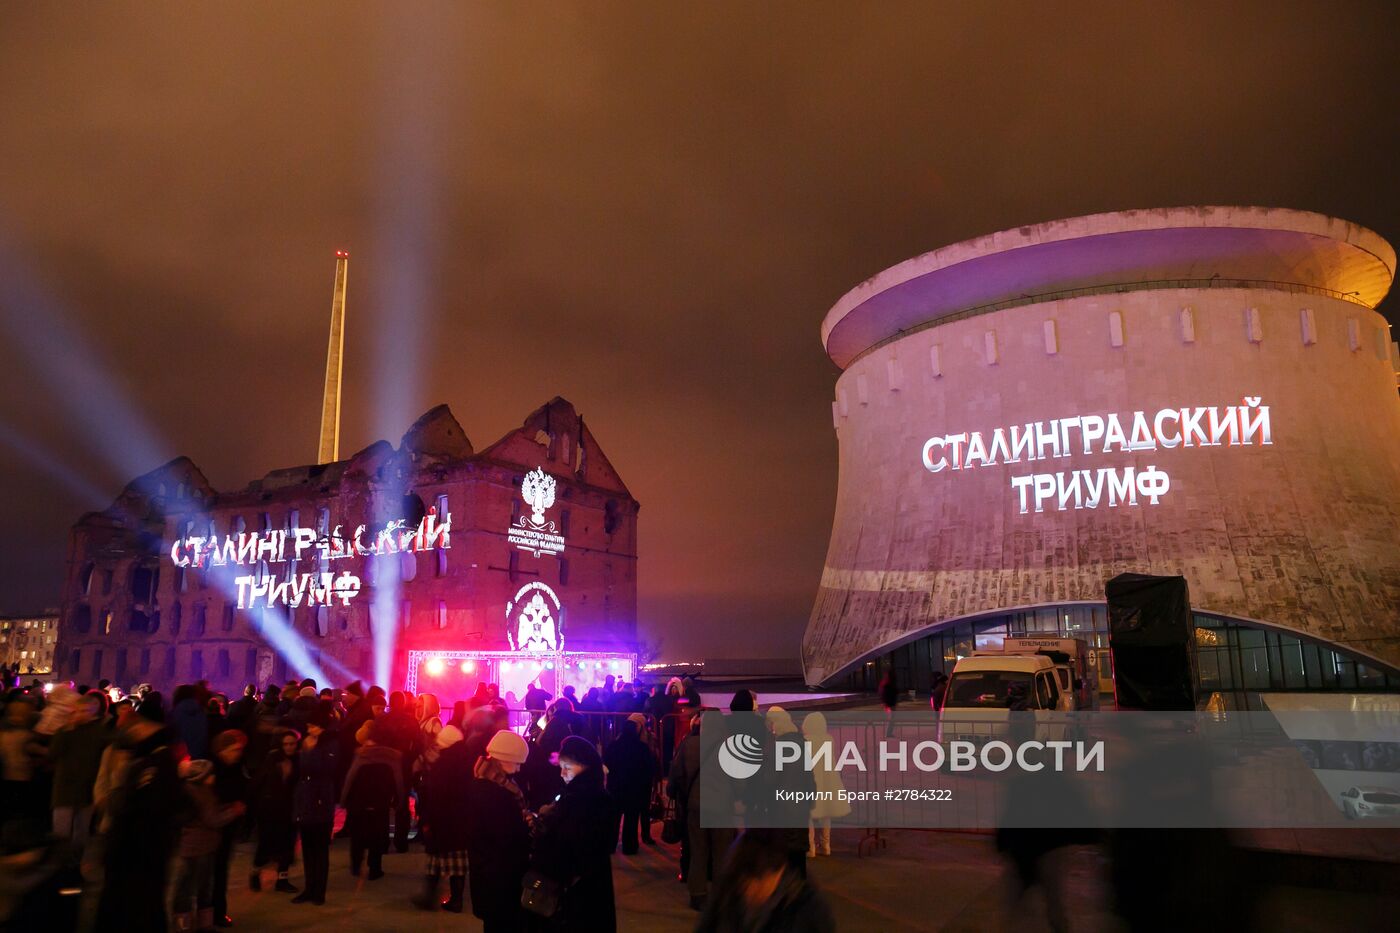 Видеоинсталляция "Сталинградский триумф" в честь 73-й годовщины победы в Сталинградской битве